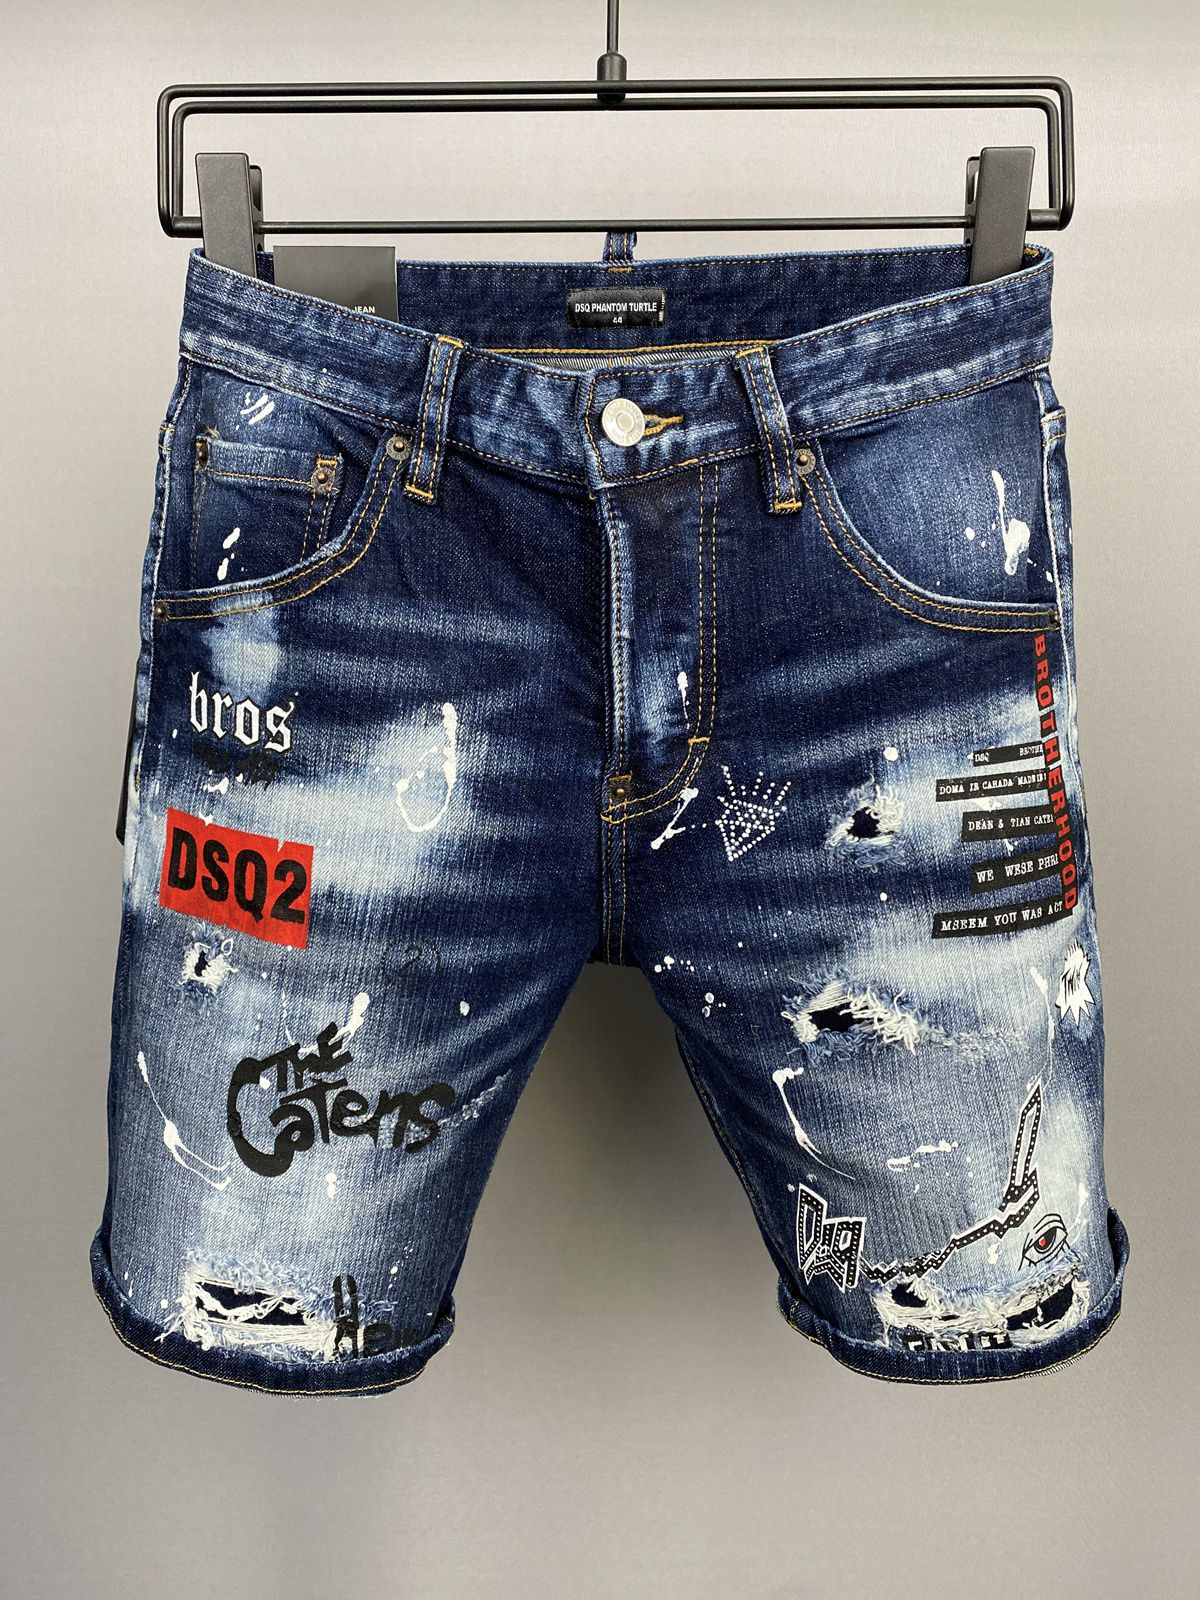 DSQ Jeans Hommes Jean Mens Designer de luxe Skinny déchiré Guy Cool Causal Hole Denim Fashion Marque Fit Jeans Homme Pantalon lavé 5149